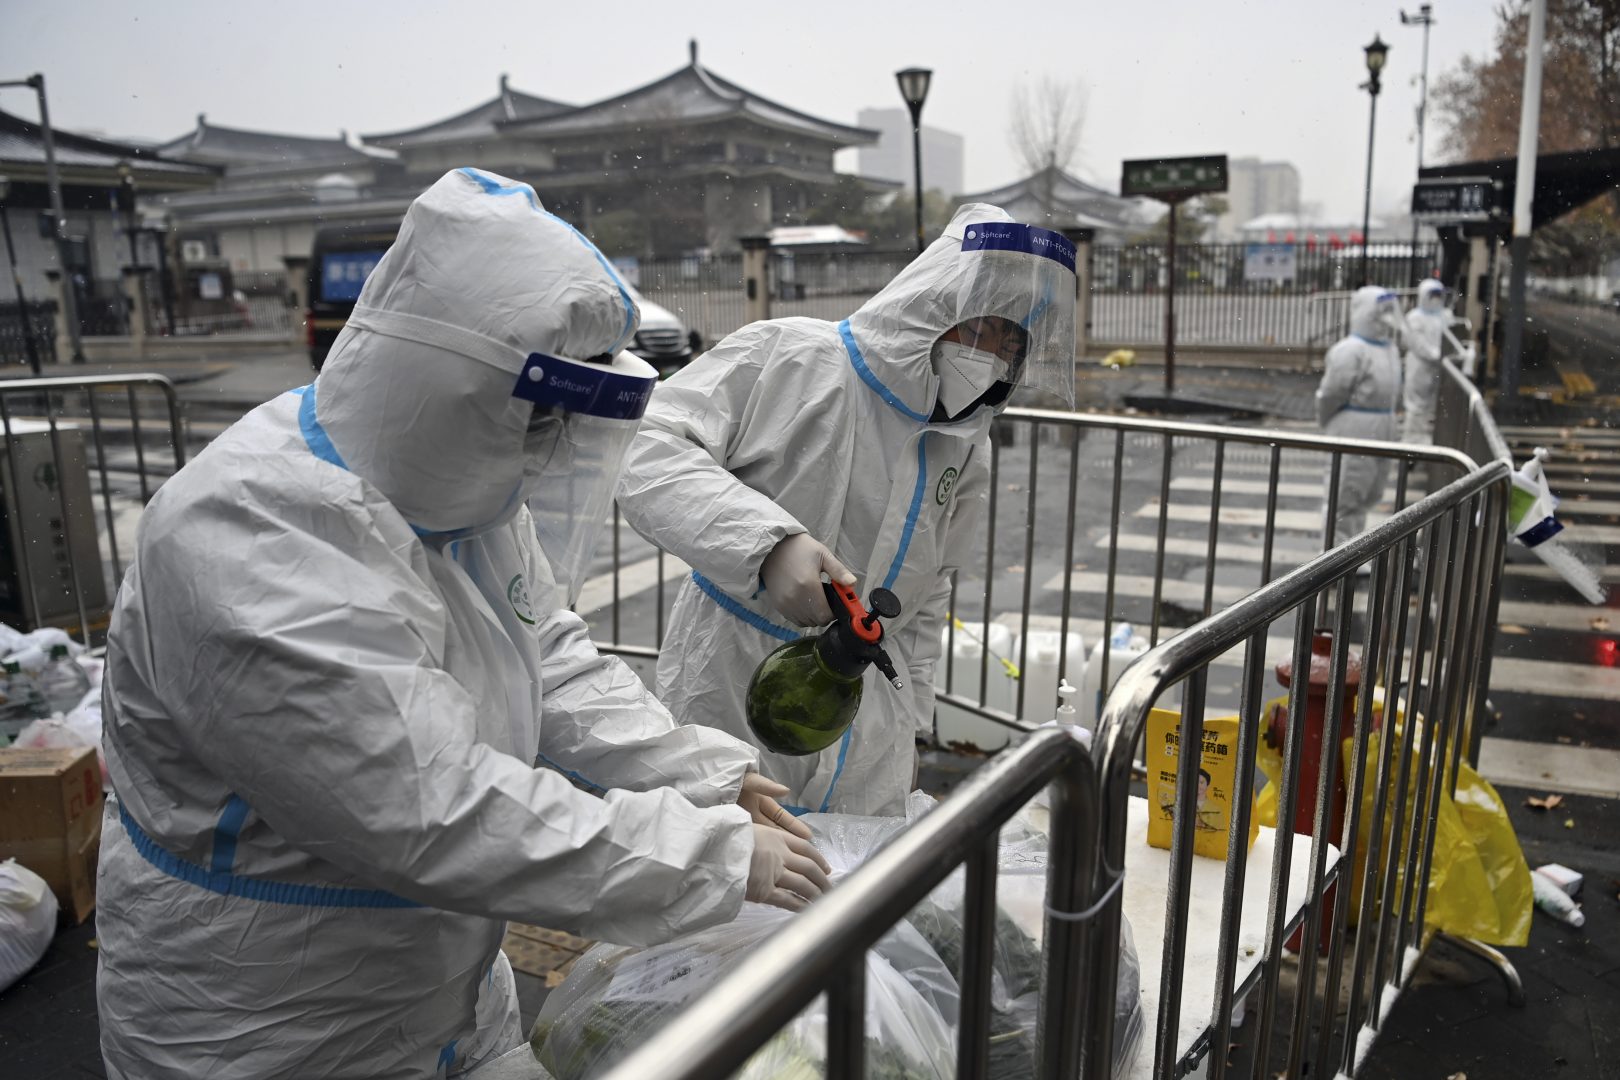 Нов щам на птичи грип заразява хора в Китай